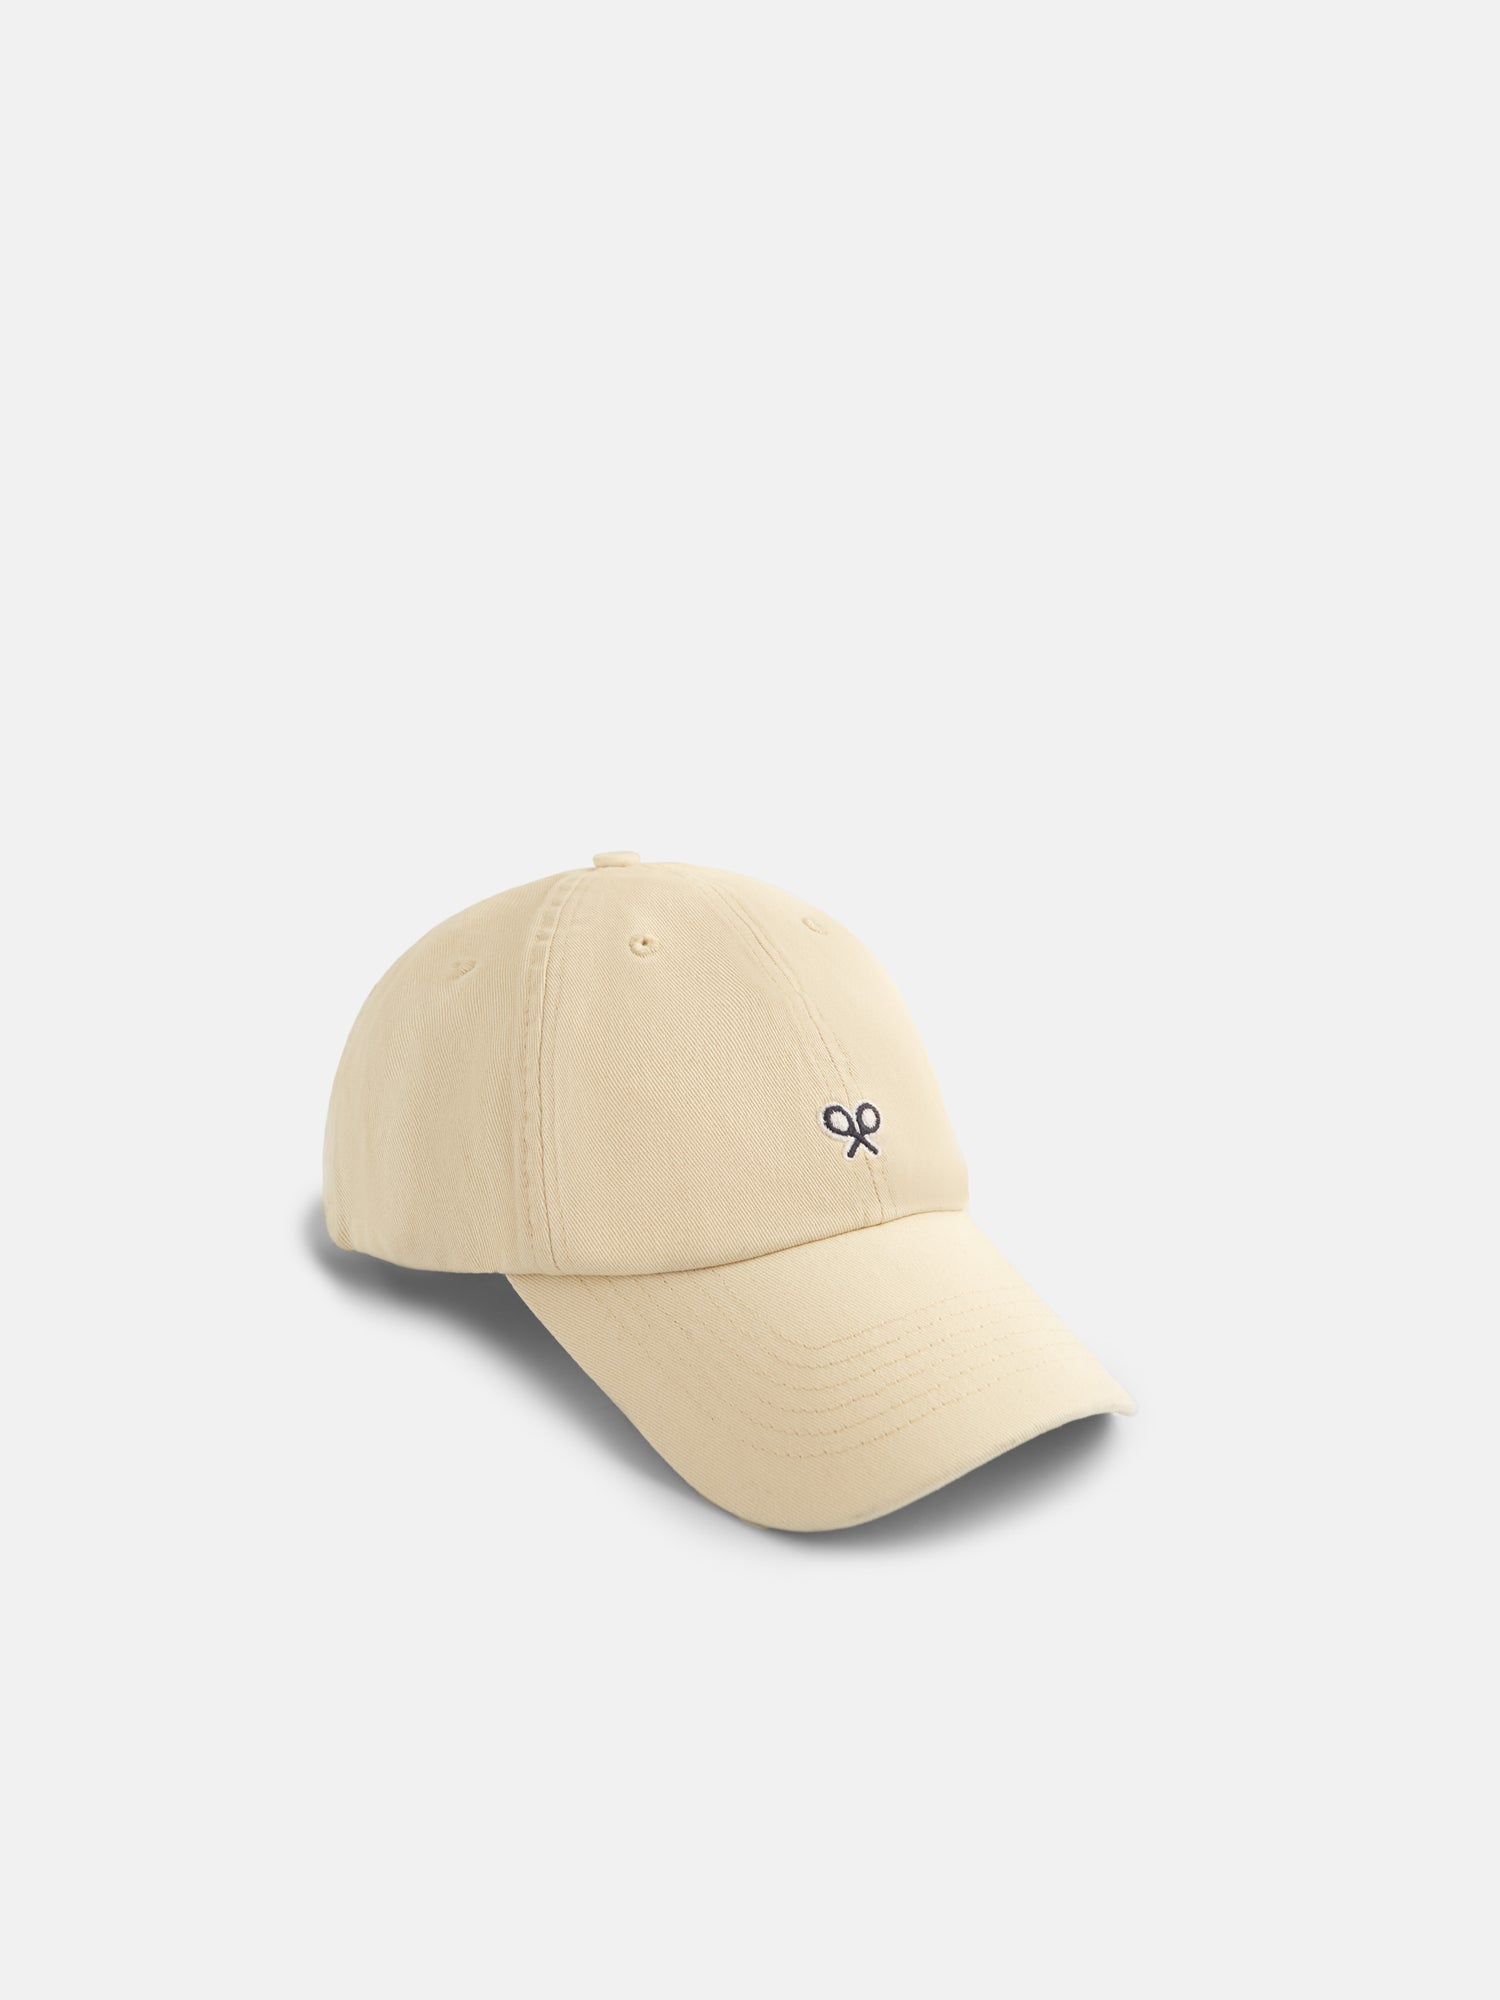 Plain light beige racquet cap